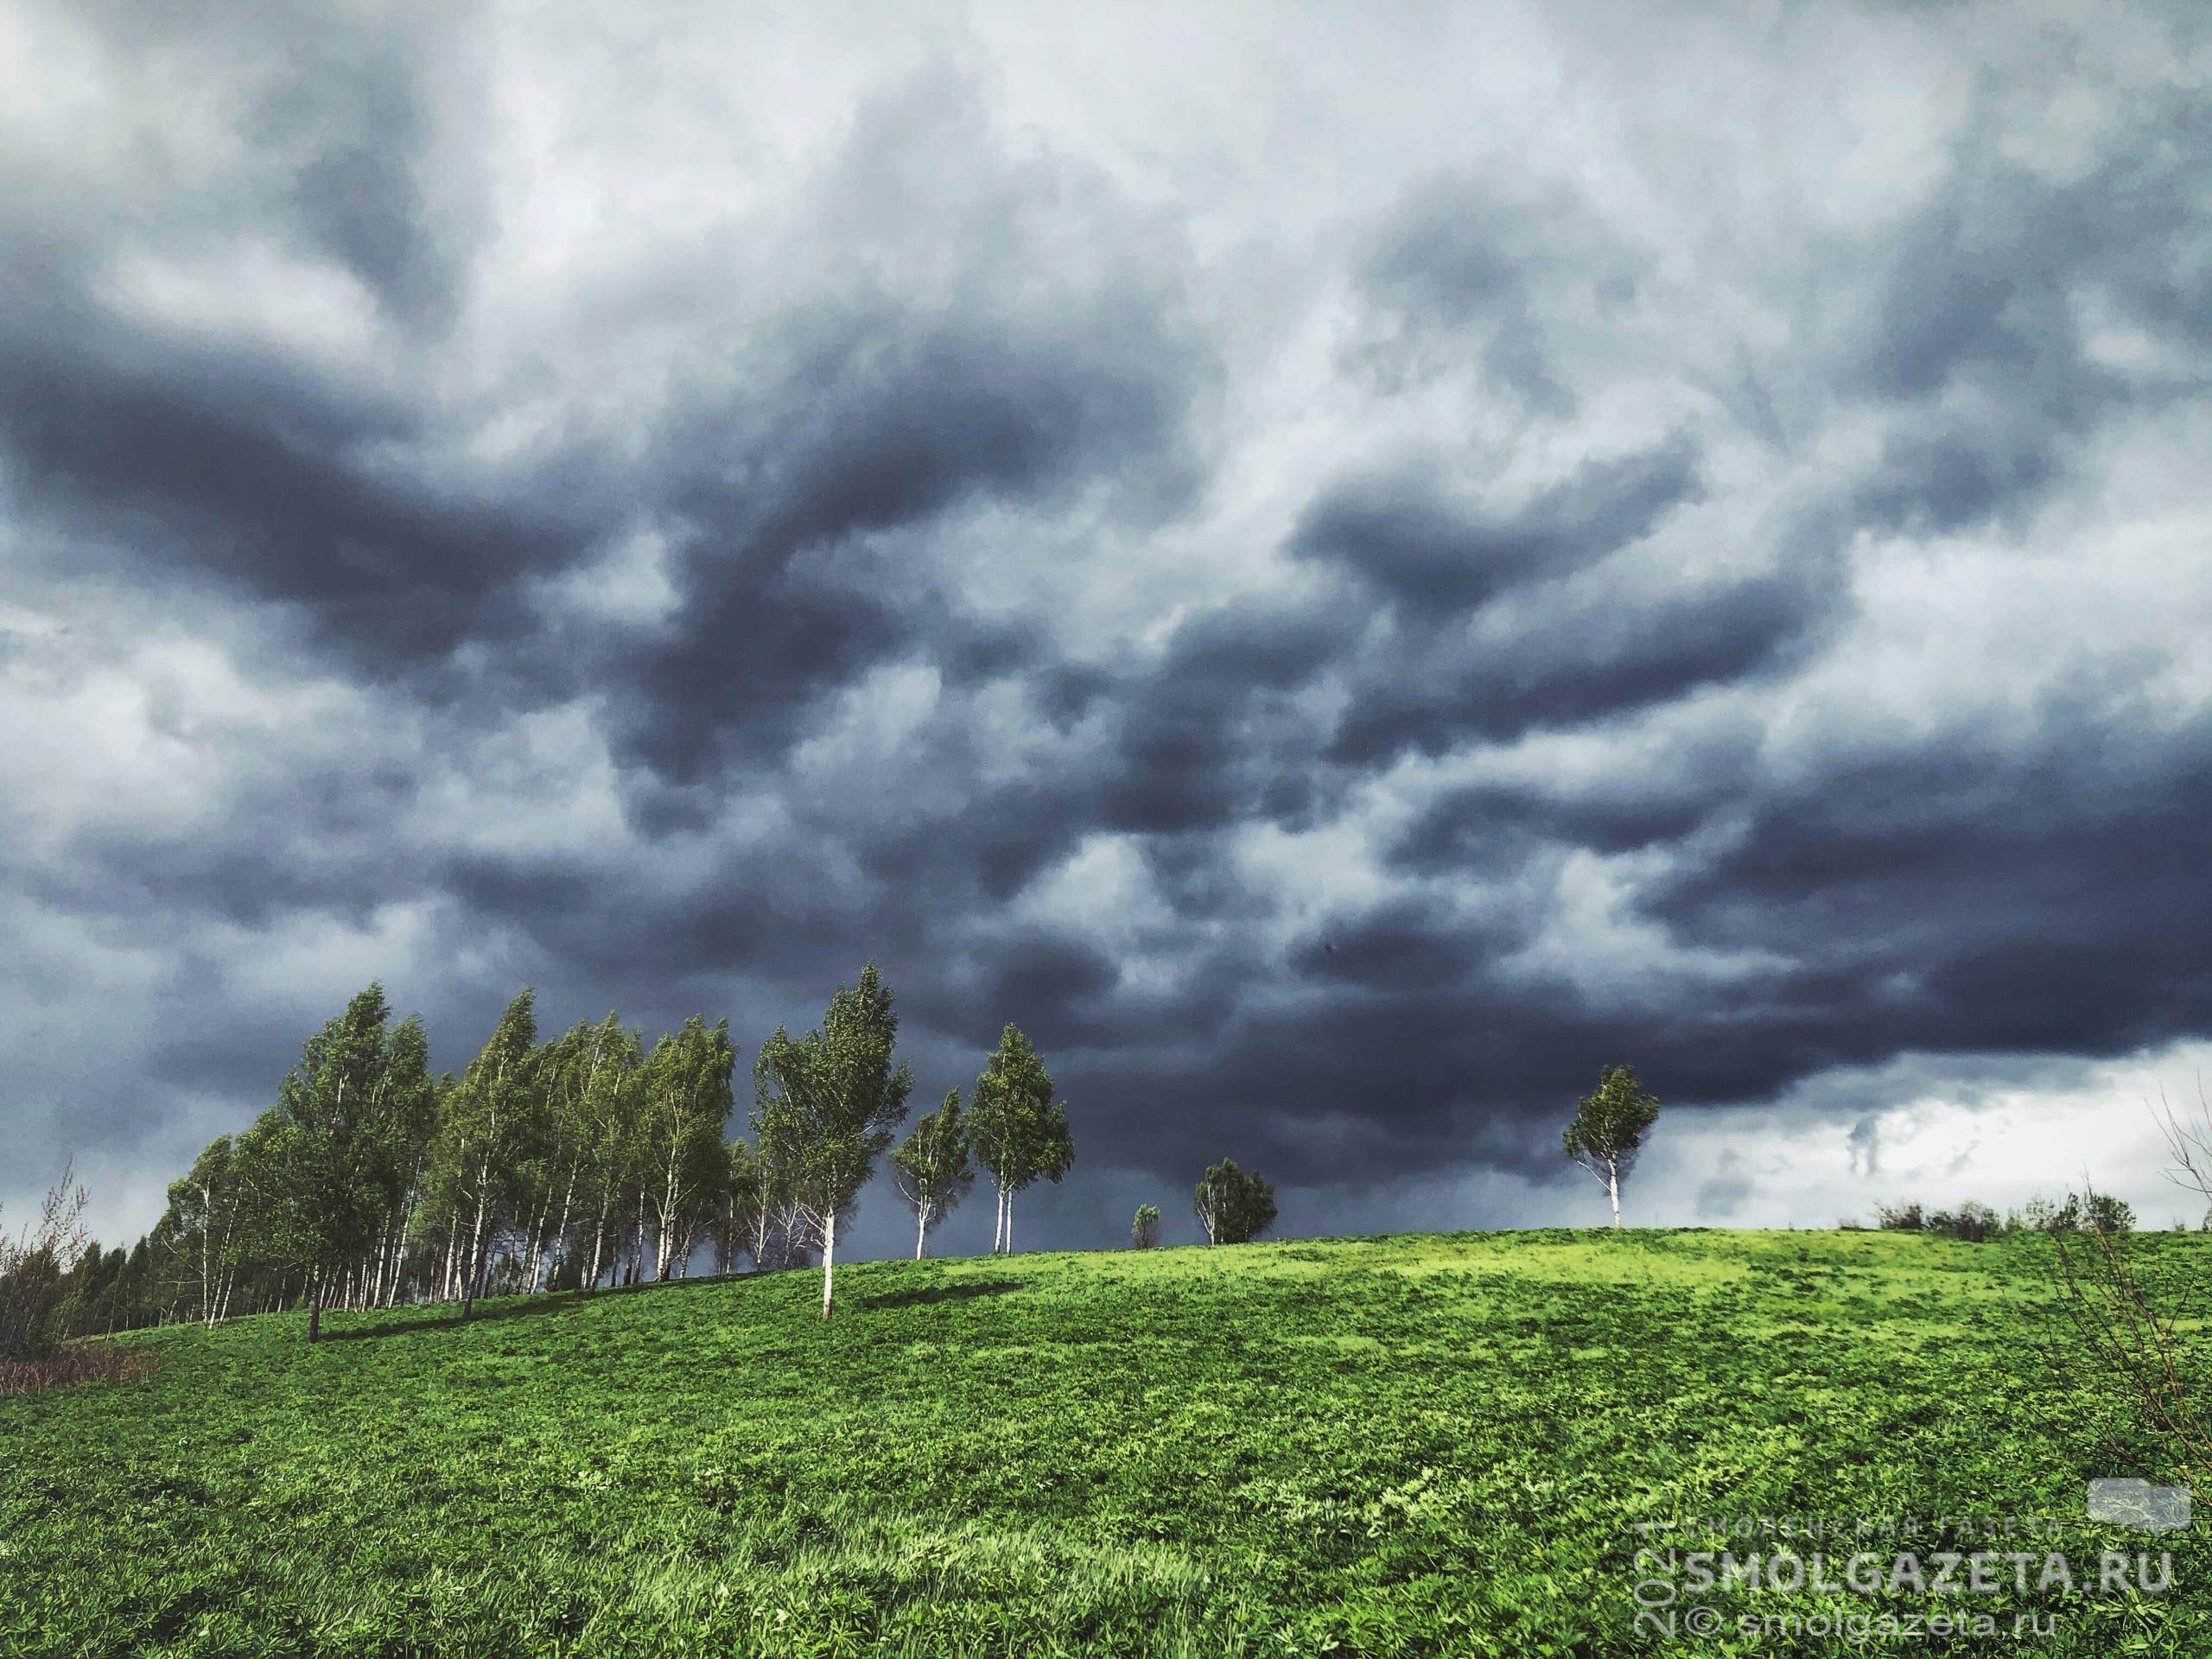 В Смоленской области спрогнозировали потенциально опасную погоду из-за грозы